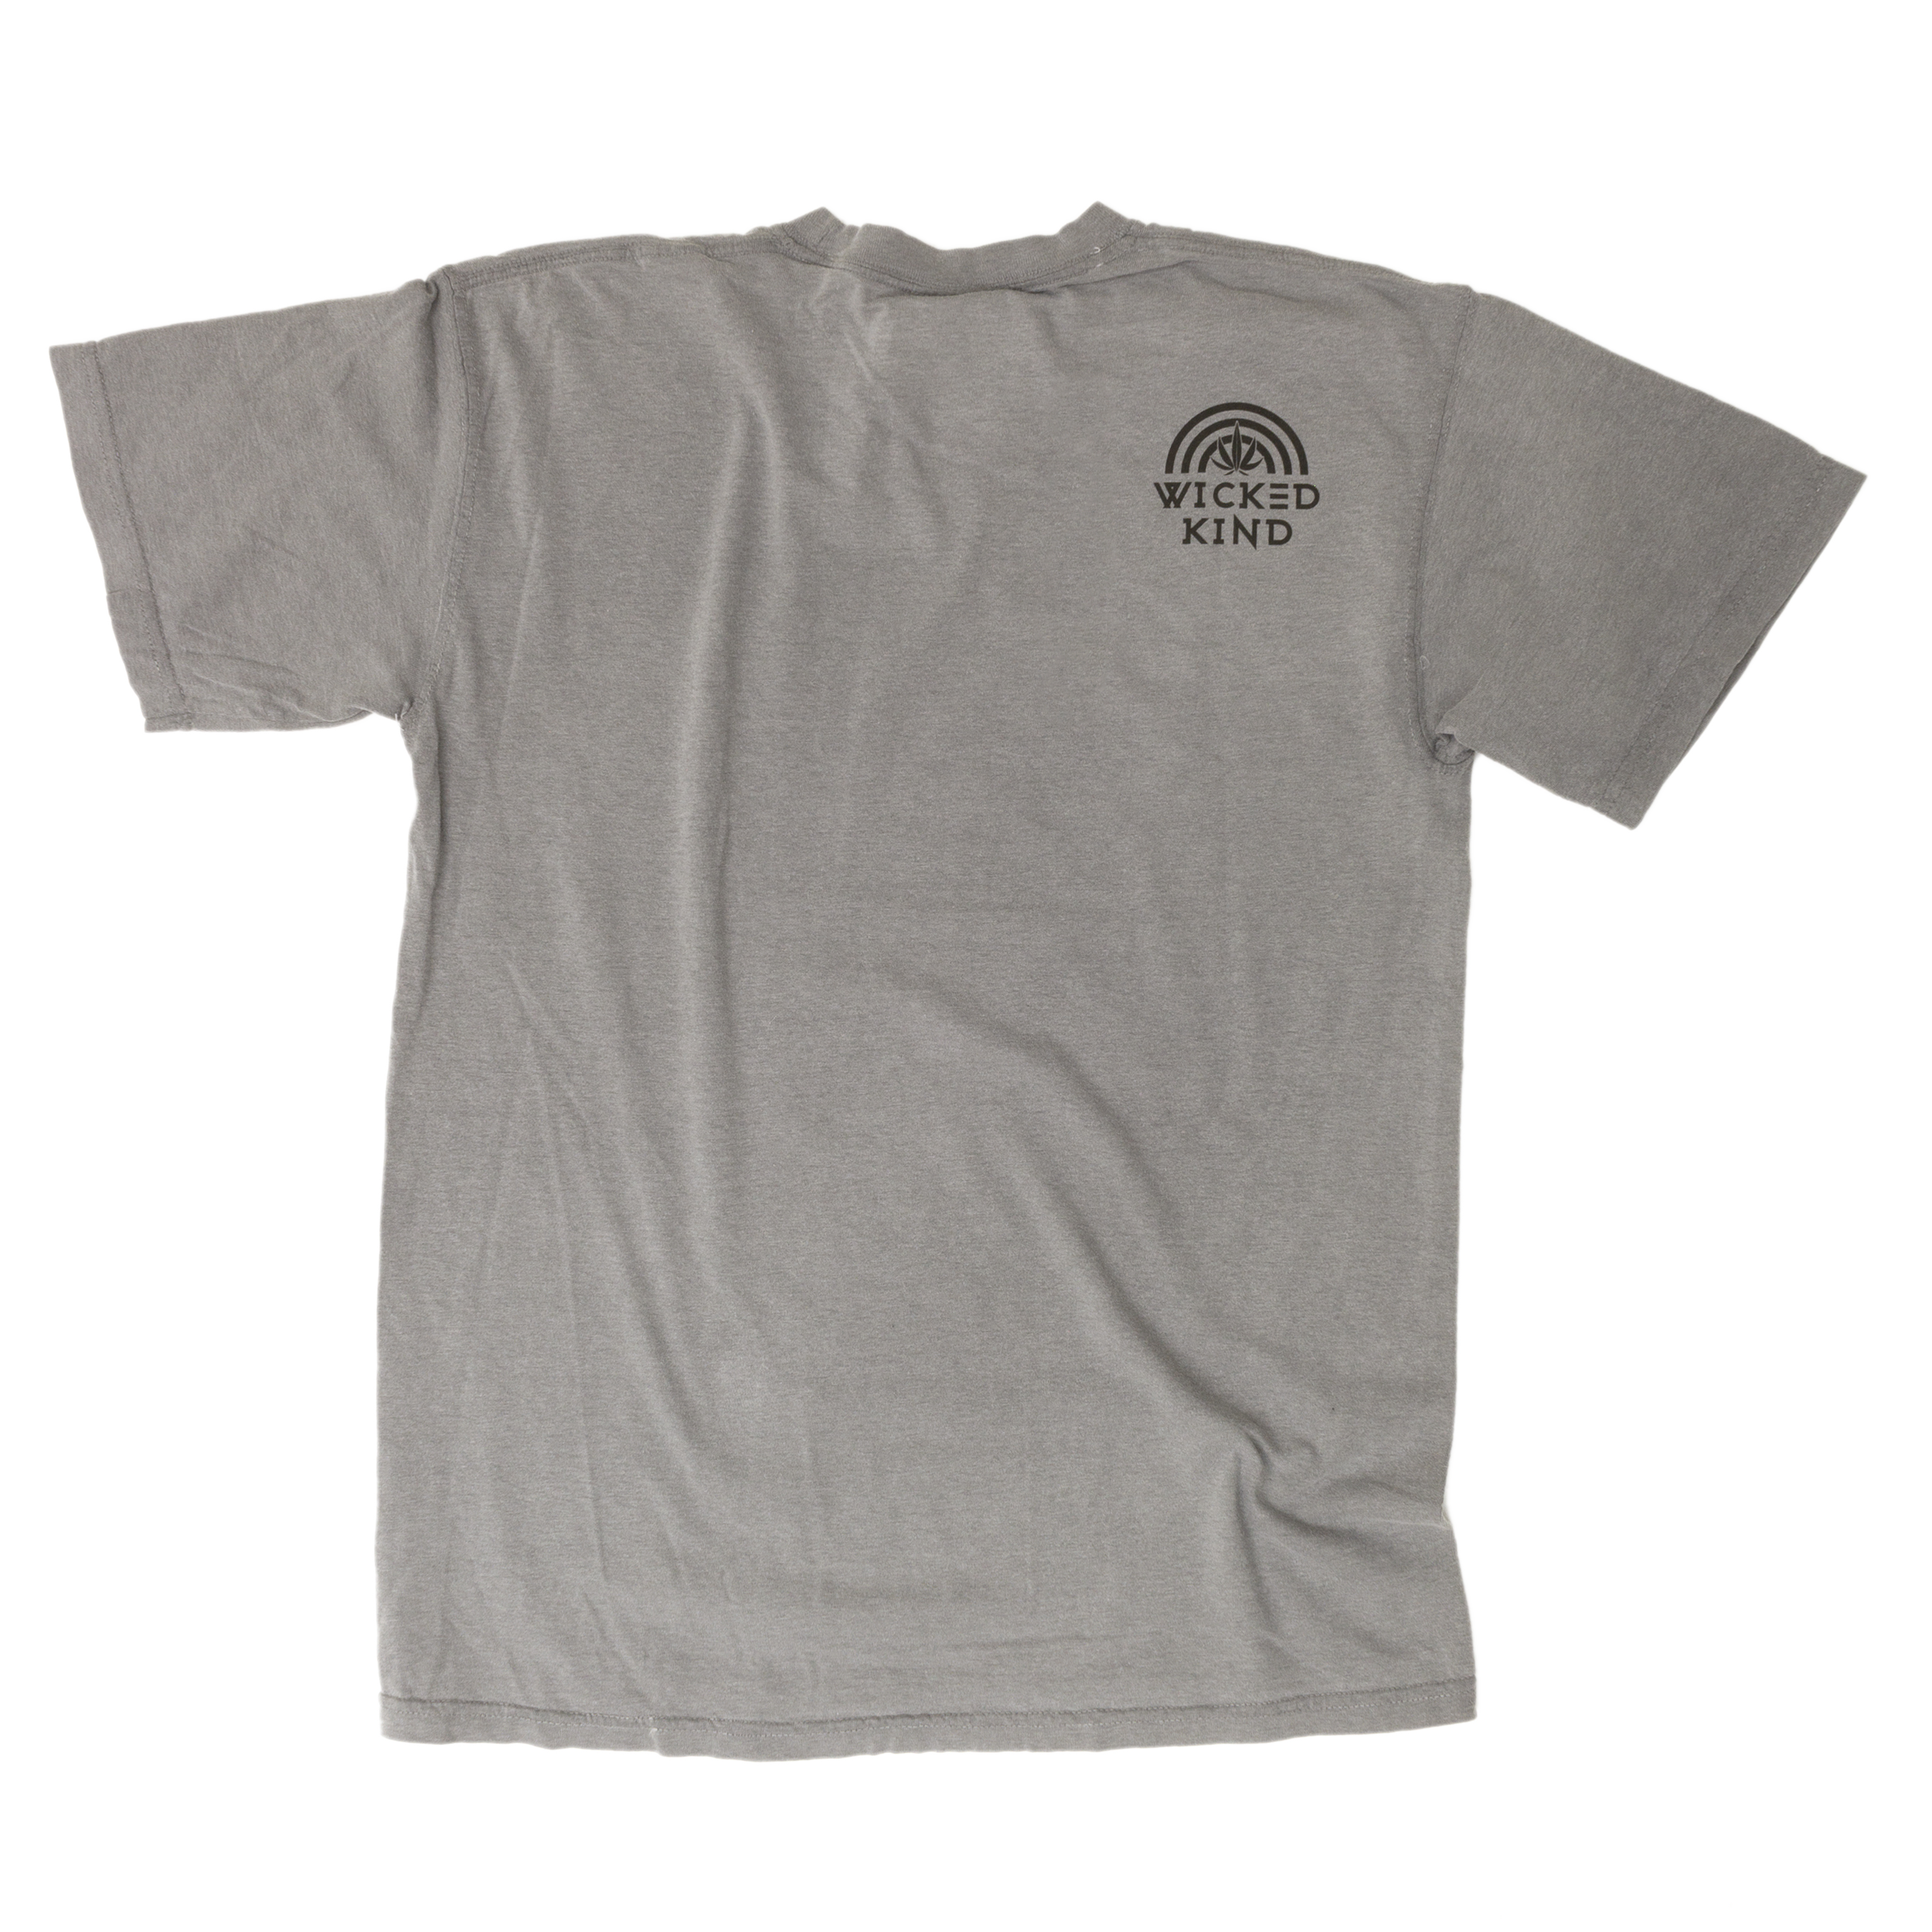 Waterfall Gray T-shirt